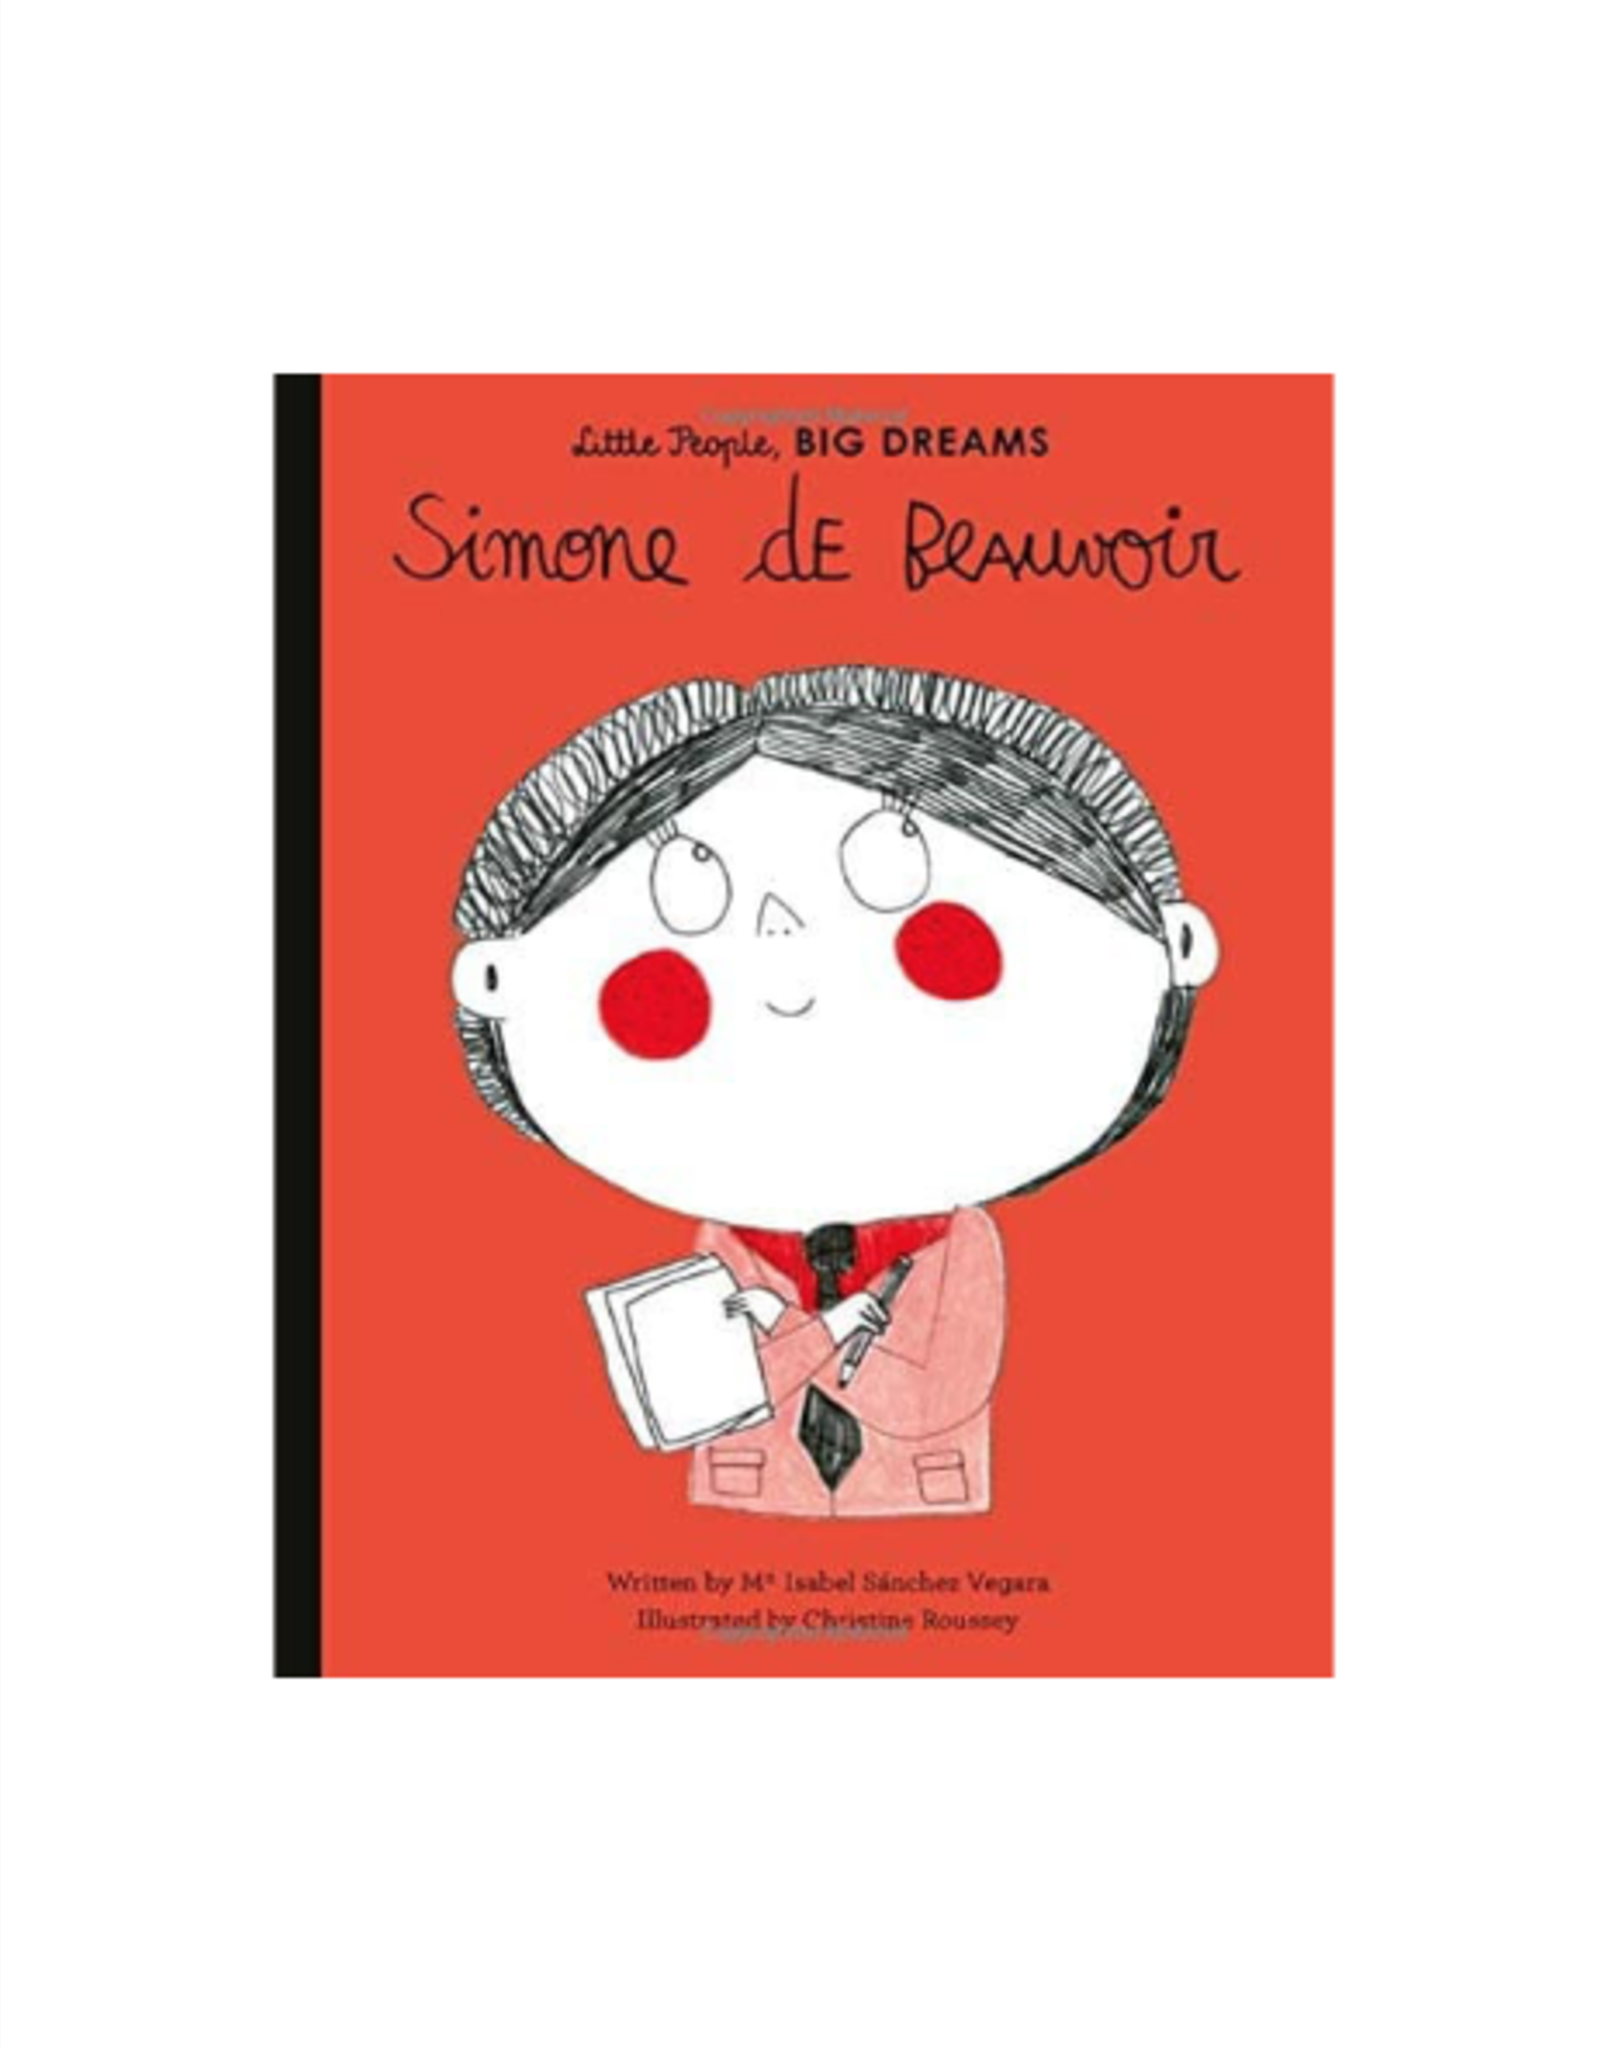 Little People, Big Dreams: Simone de Beauvoir by: Maria Isabel Sanchez Vegara